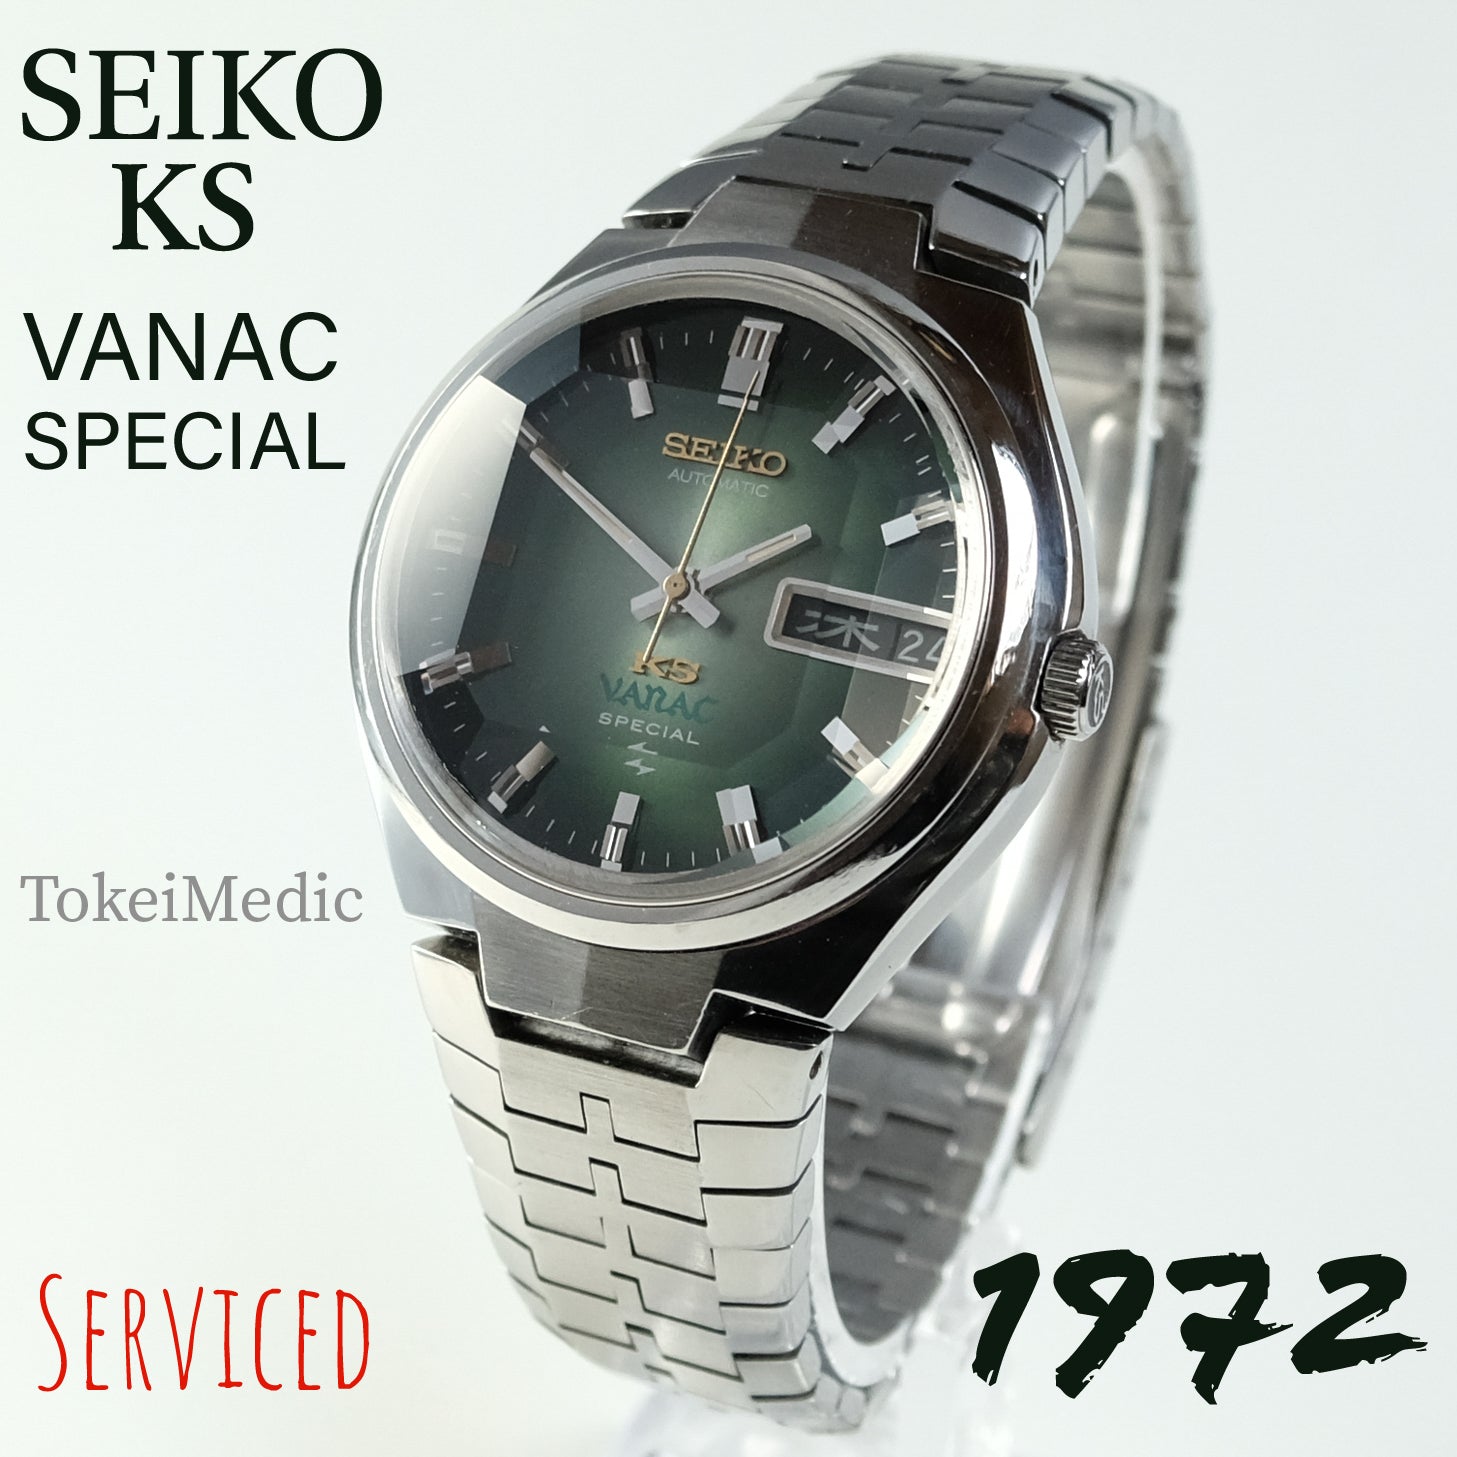 1972 Seiko KS Vanac Special 5246-6050 – TokeiMedic